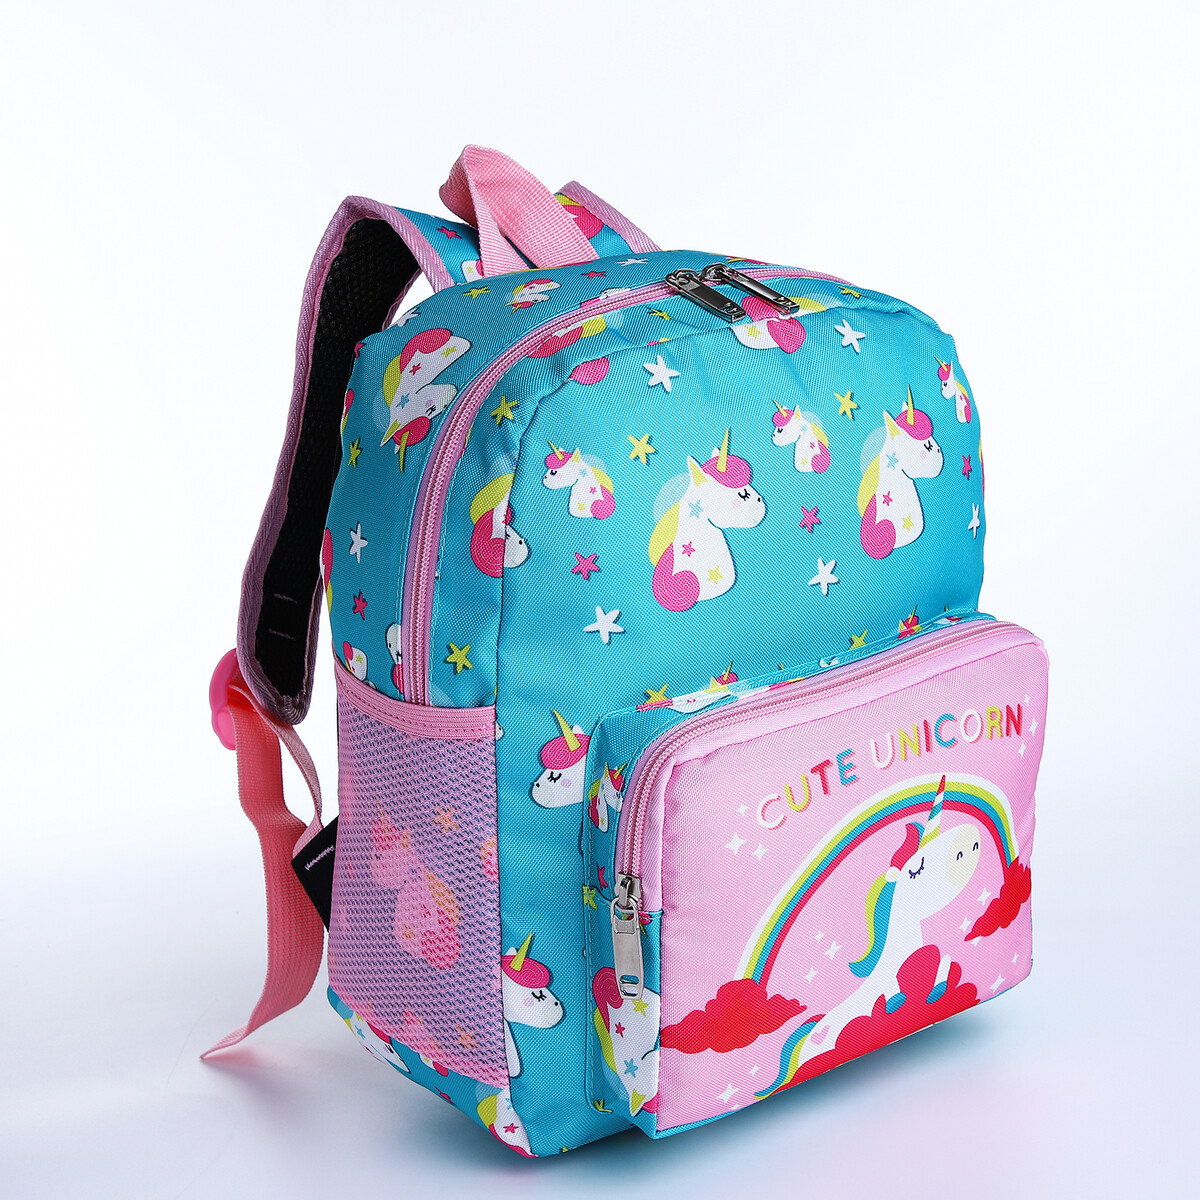 Рюкзак детский на молнии, 3 наружных кармана, цвет бирюзовый/розовый рюкзак школьный из текстиля на молнии 3 кармана бирюзовый